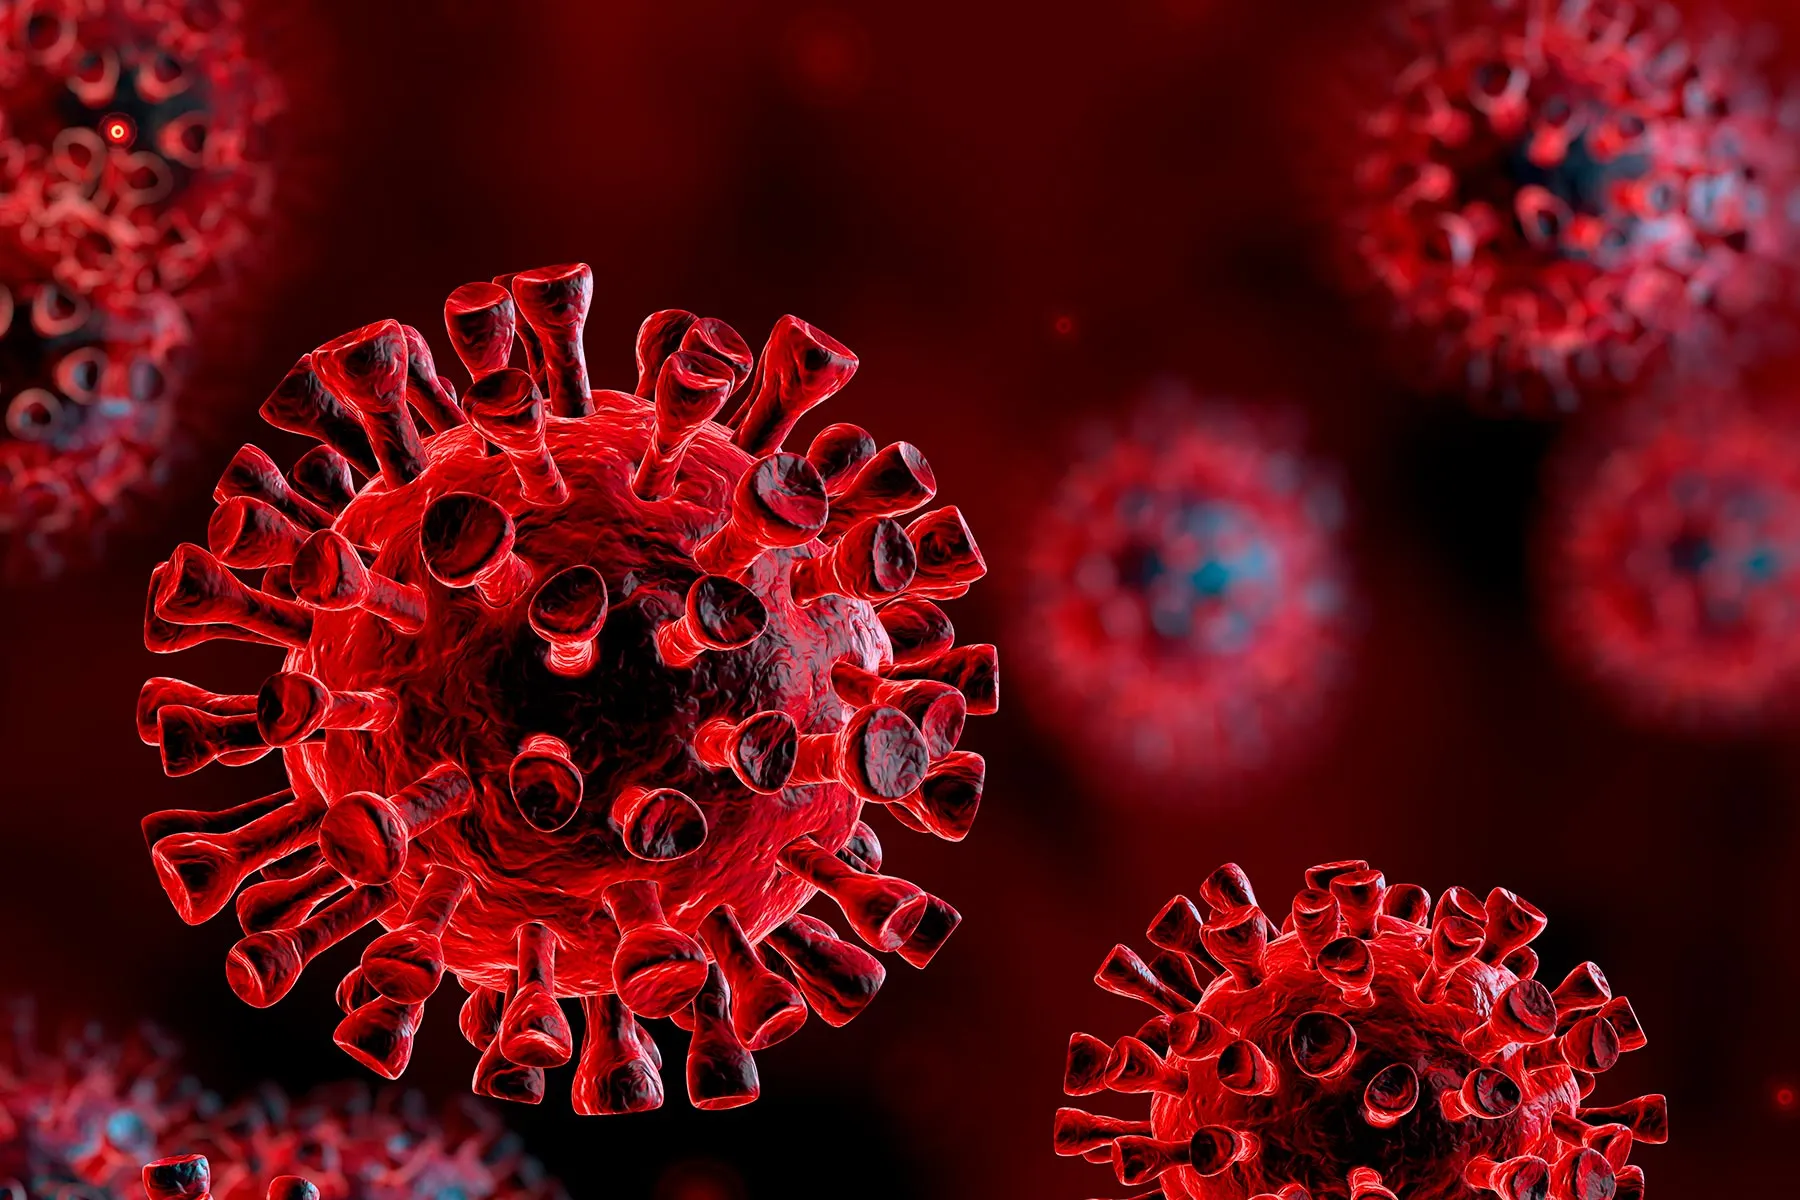 'This Pandemic Still Has Legs': COVID-19 Expert Q&A